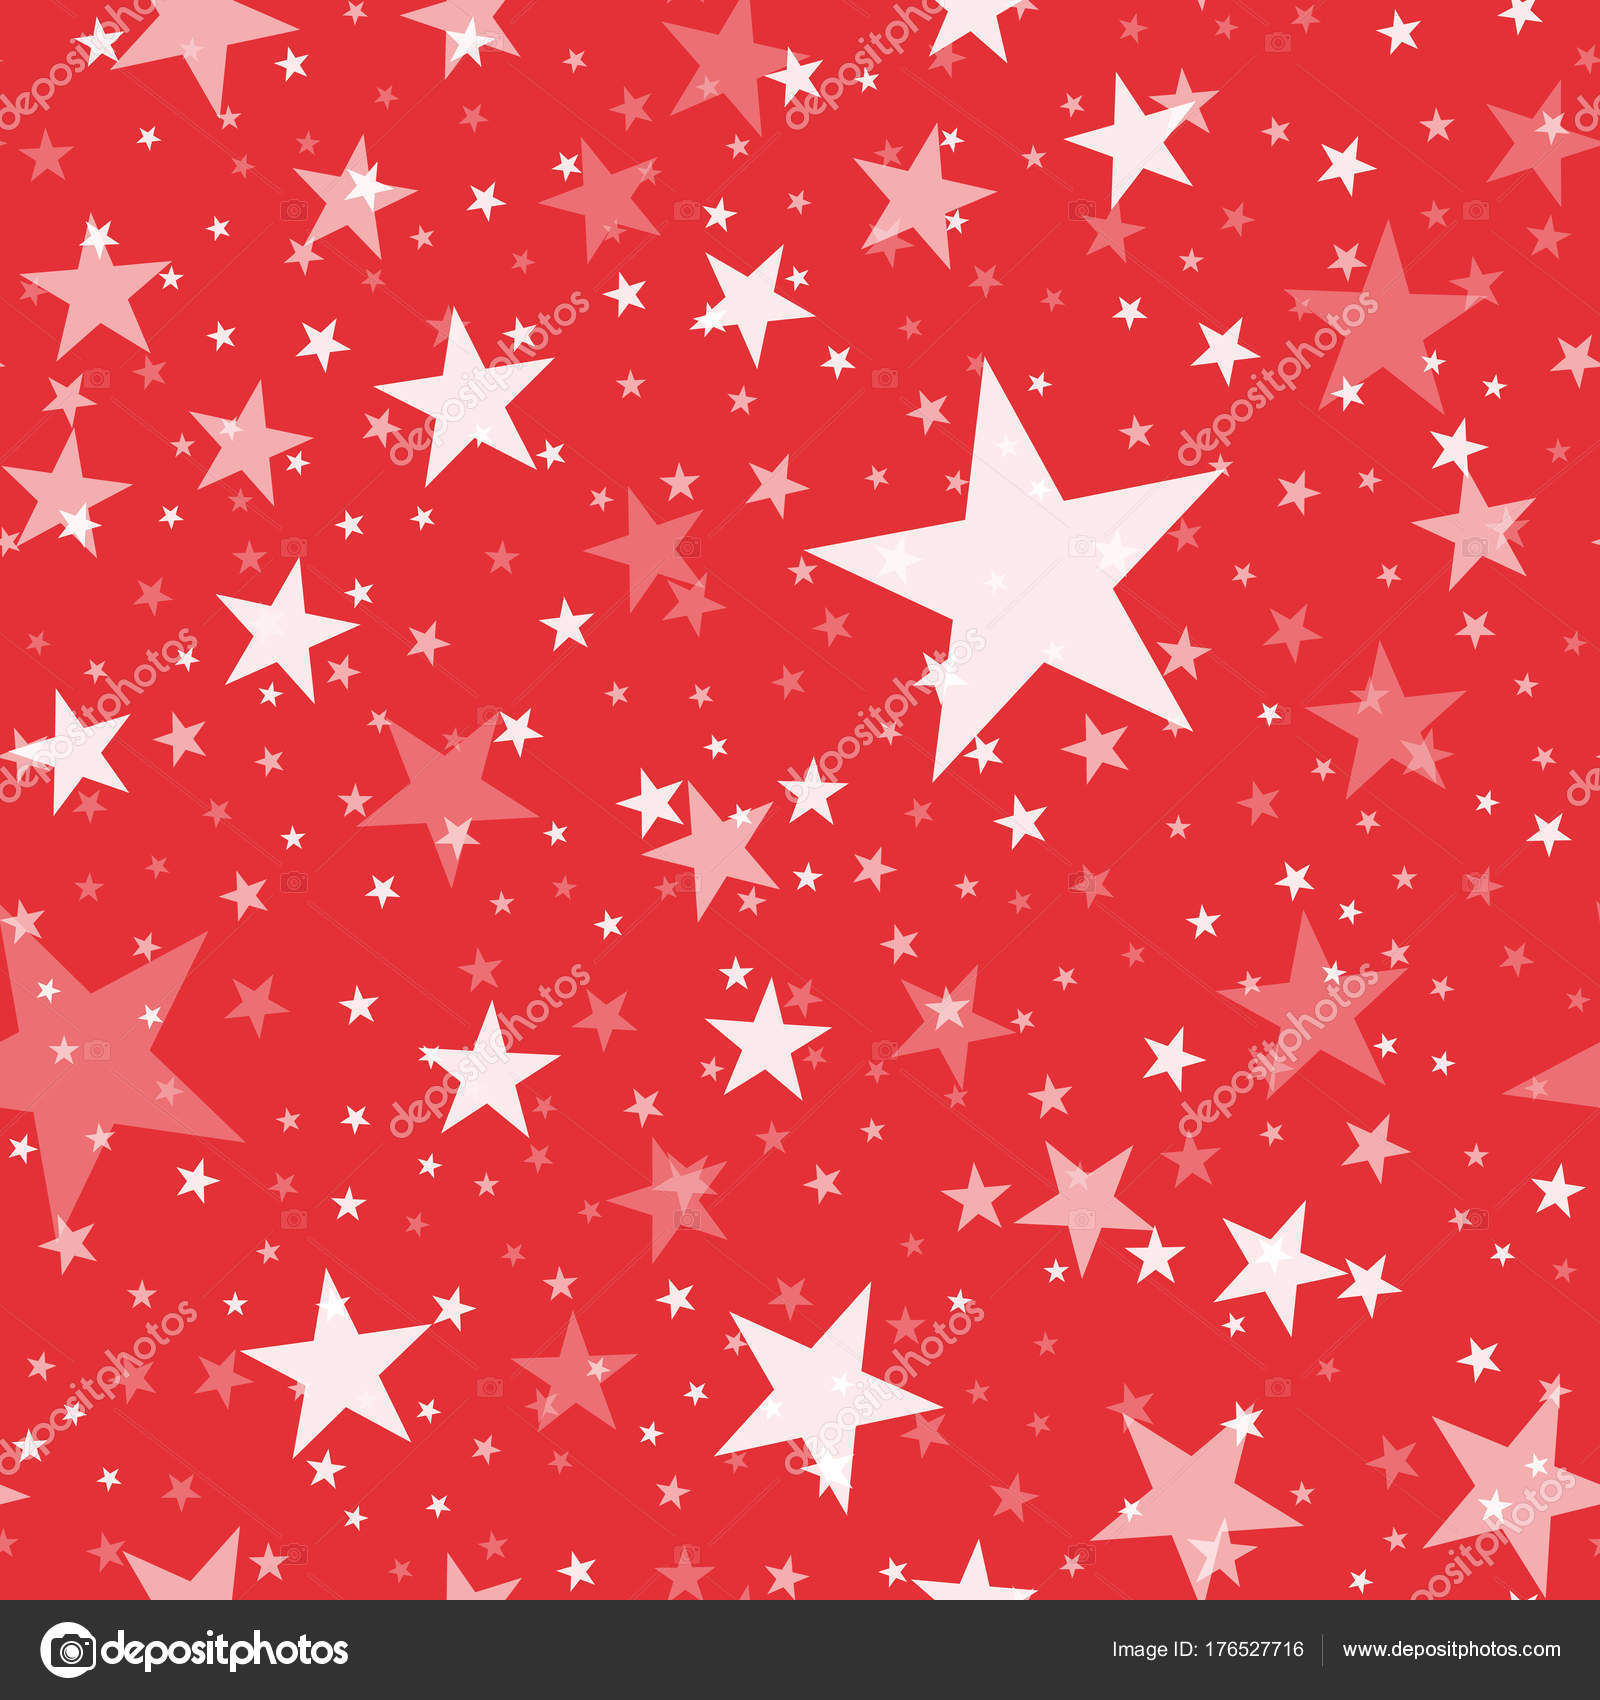 White Stars Seamless Pattern On Red Background Marvelous Endless Random Scattered White Stars Stock Vector C Doozydo